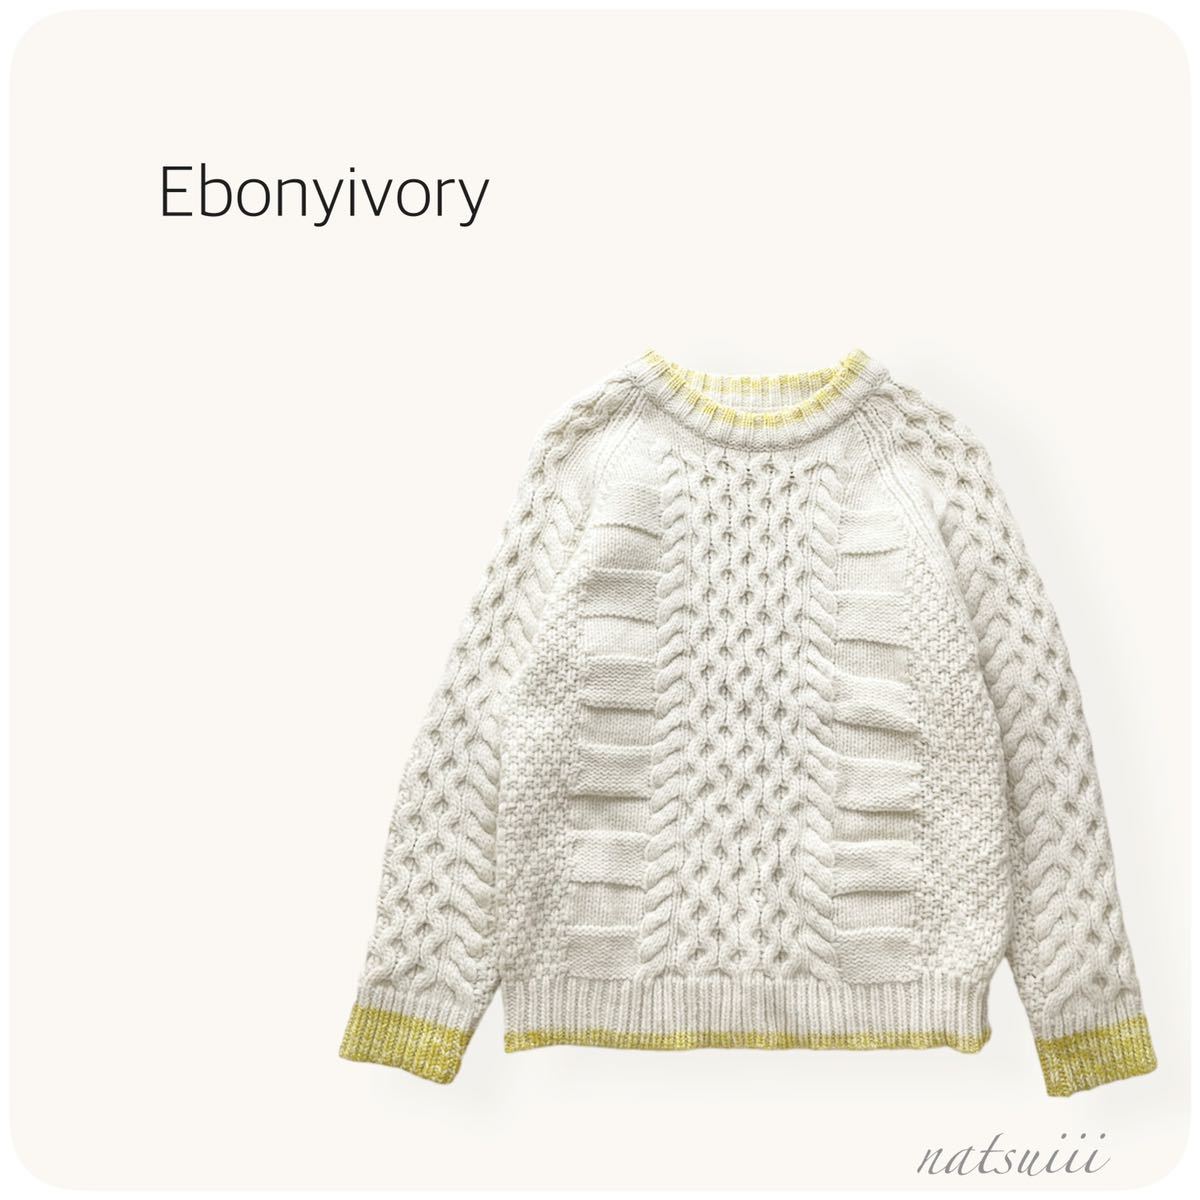 Ebonyivory Ebony Ivory.